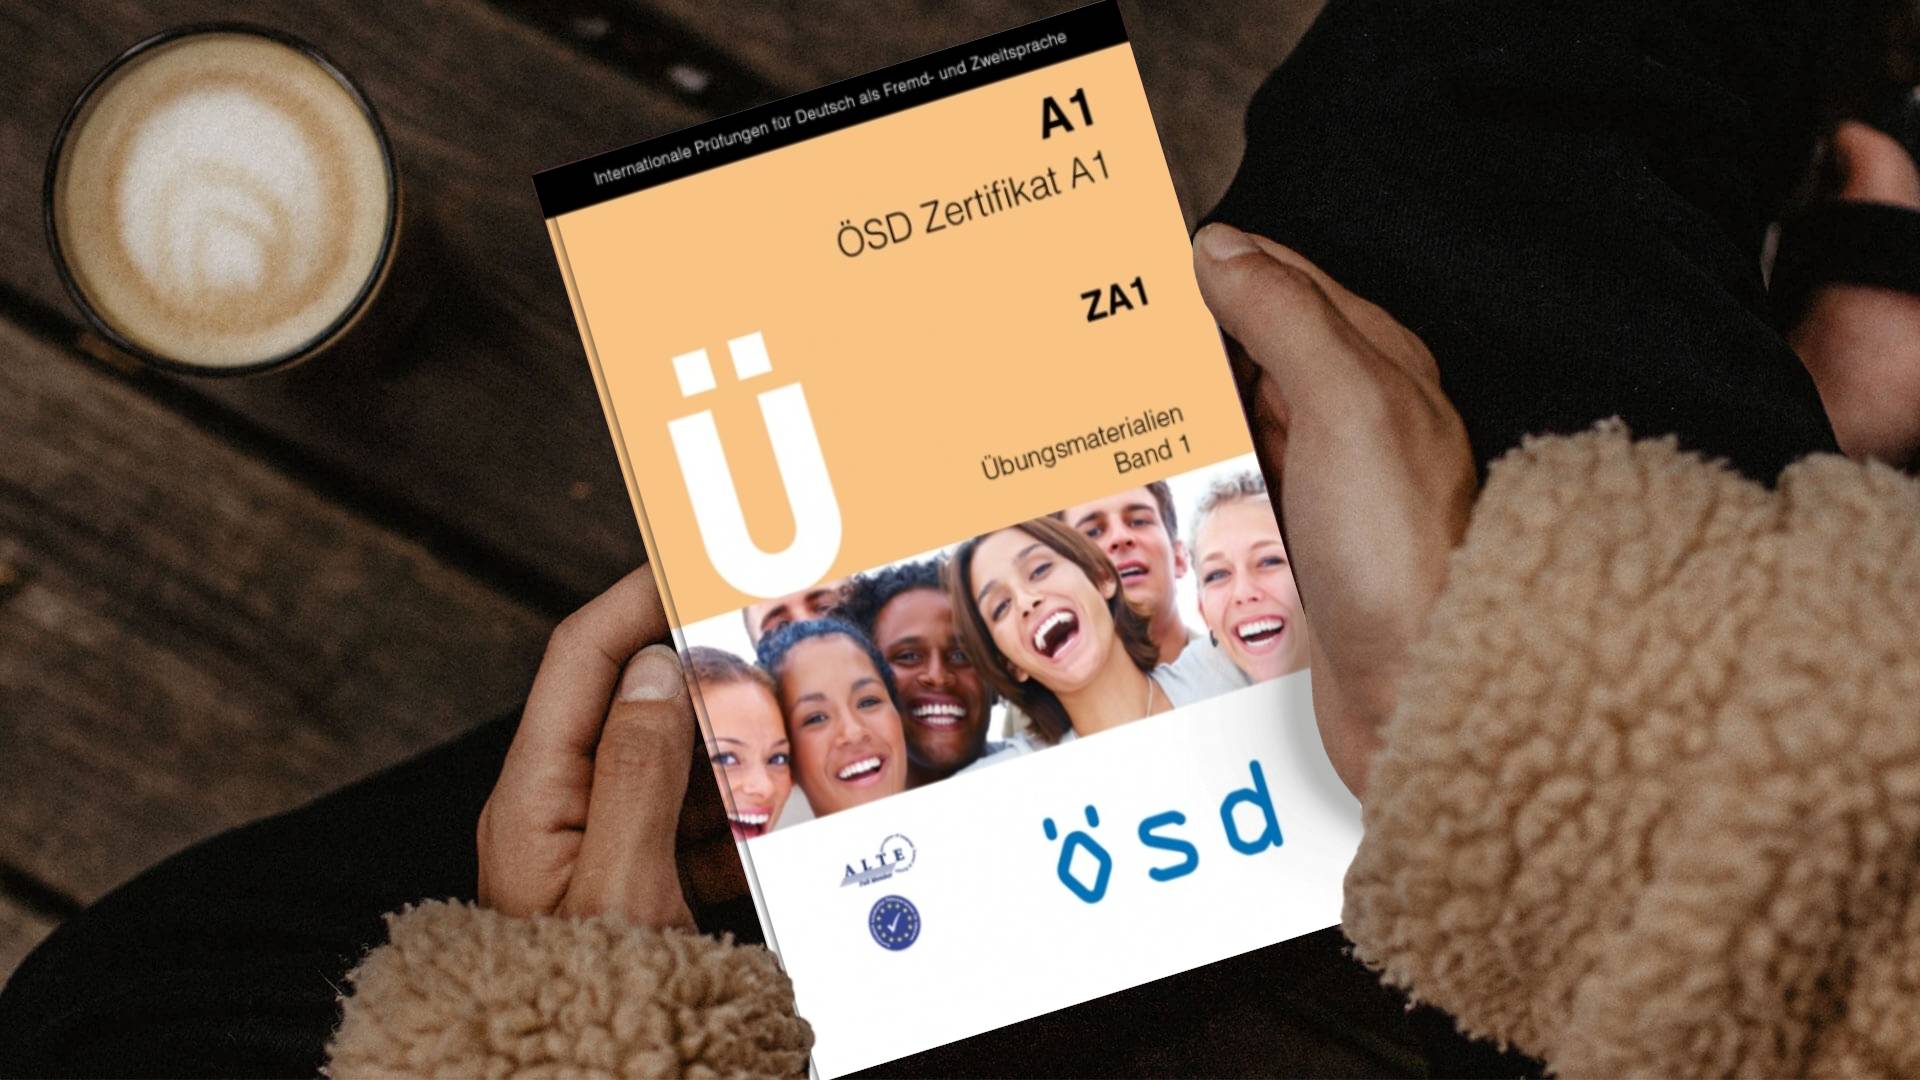 خرید کتاب زبان | زبان استور | آزمون او اس دی | U ÖSD Zertifikat A1 ZA1 Ubungsmaterialien Band | U ÖSD